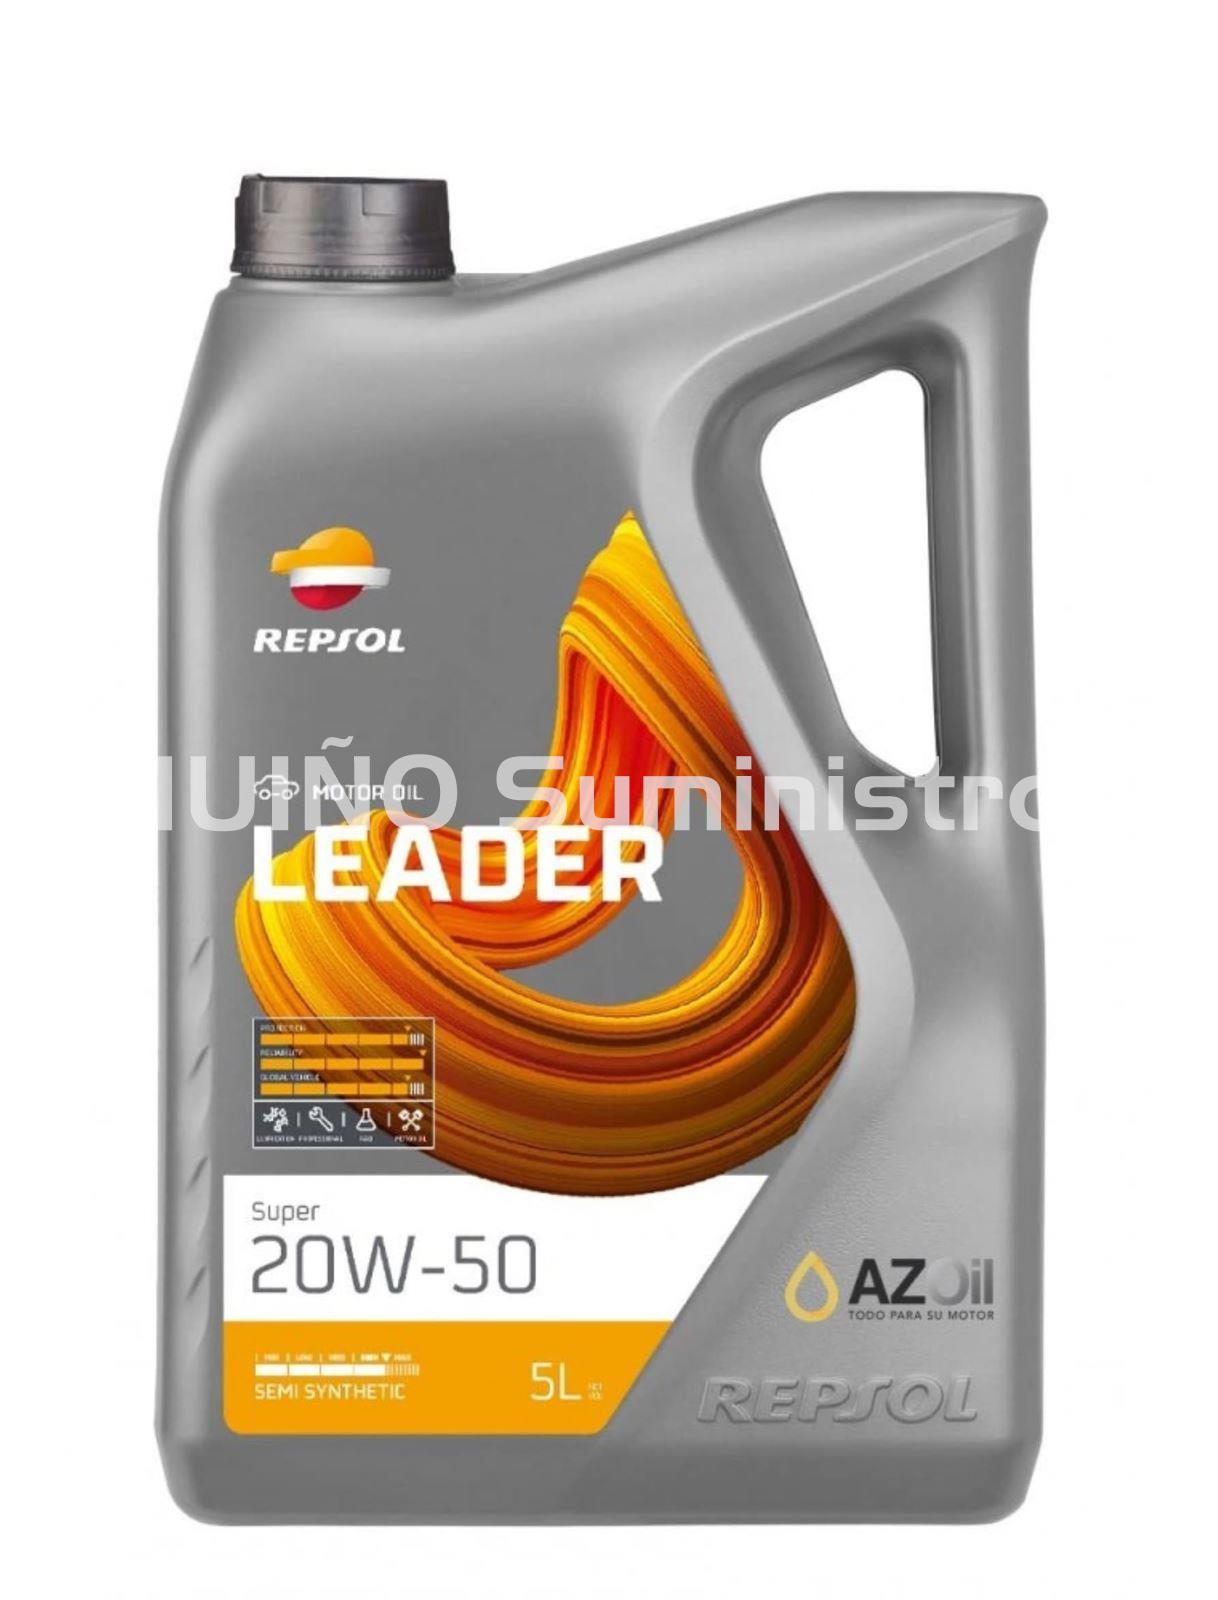 Aceite Leader super 20w50 - Imagen 1